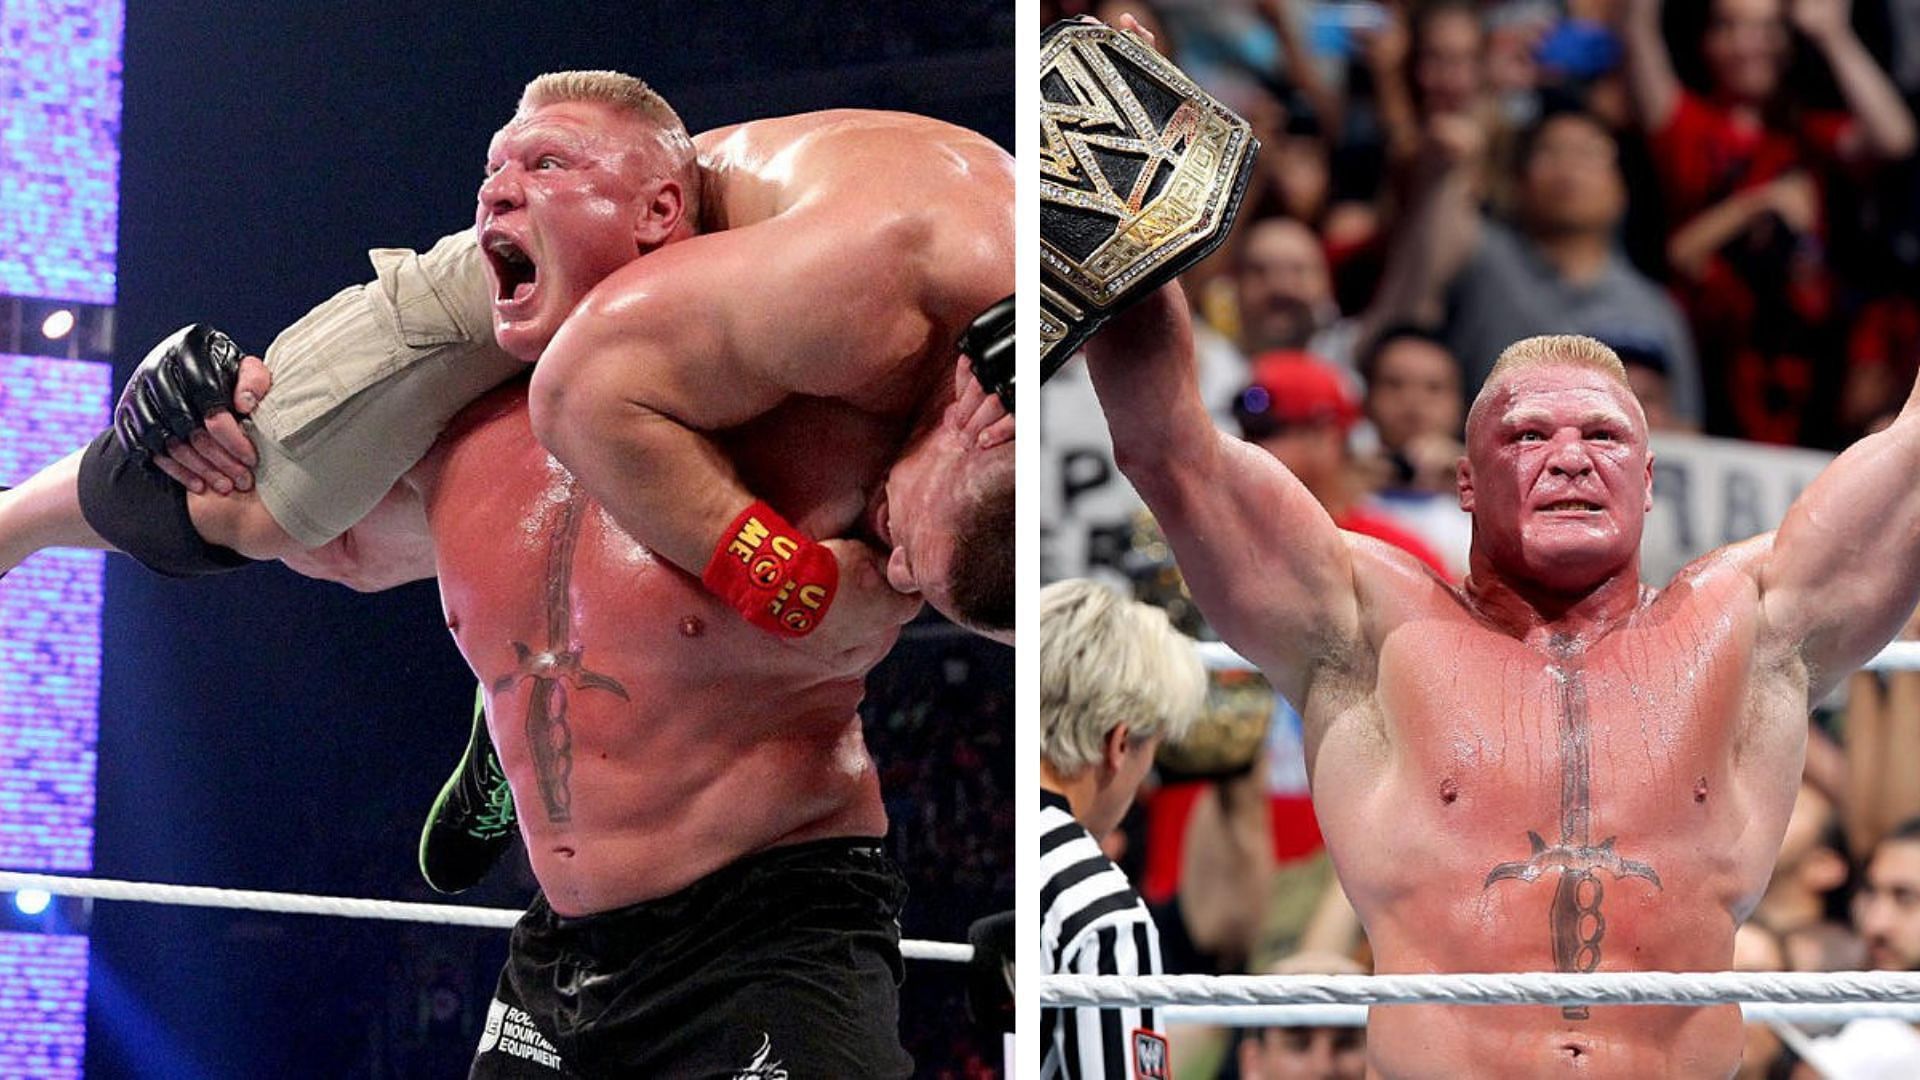 Brock Lesnar obliterated John Cena at WWE SummerSlam 2014